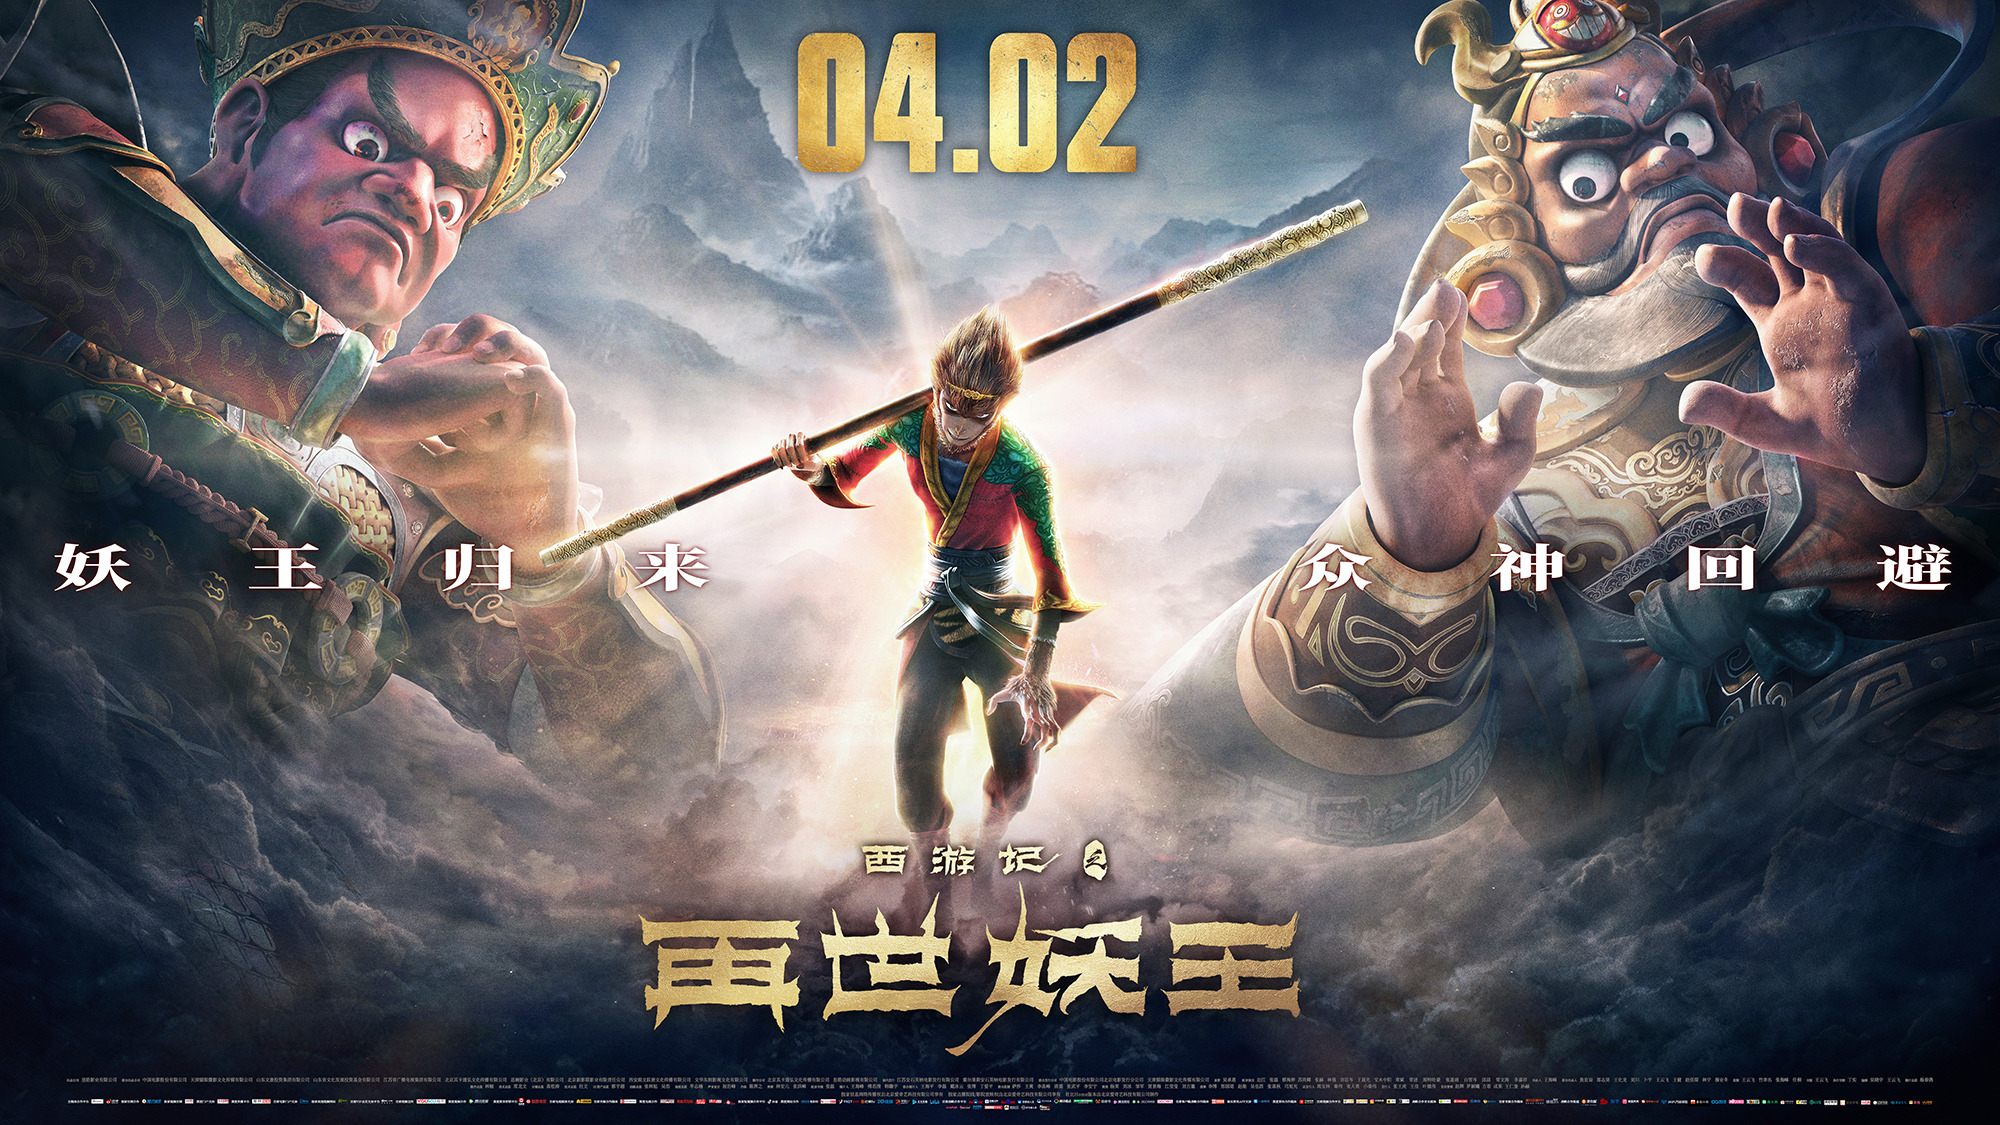 Mega Sized Movie Poster Image for Xi You Ji Zhi Zai Shi Yao Wang (#21 of 21)